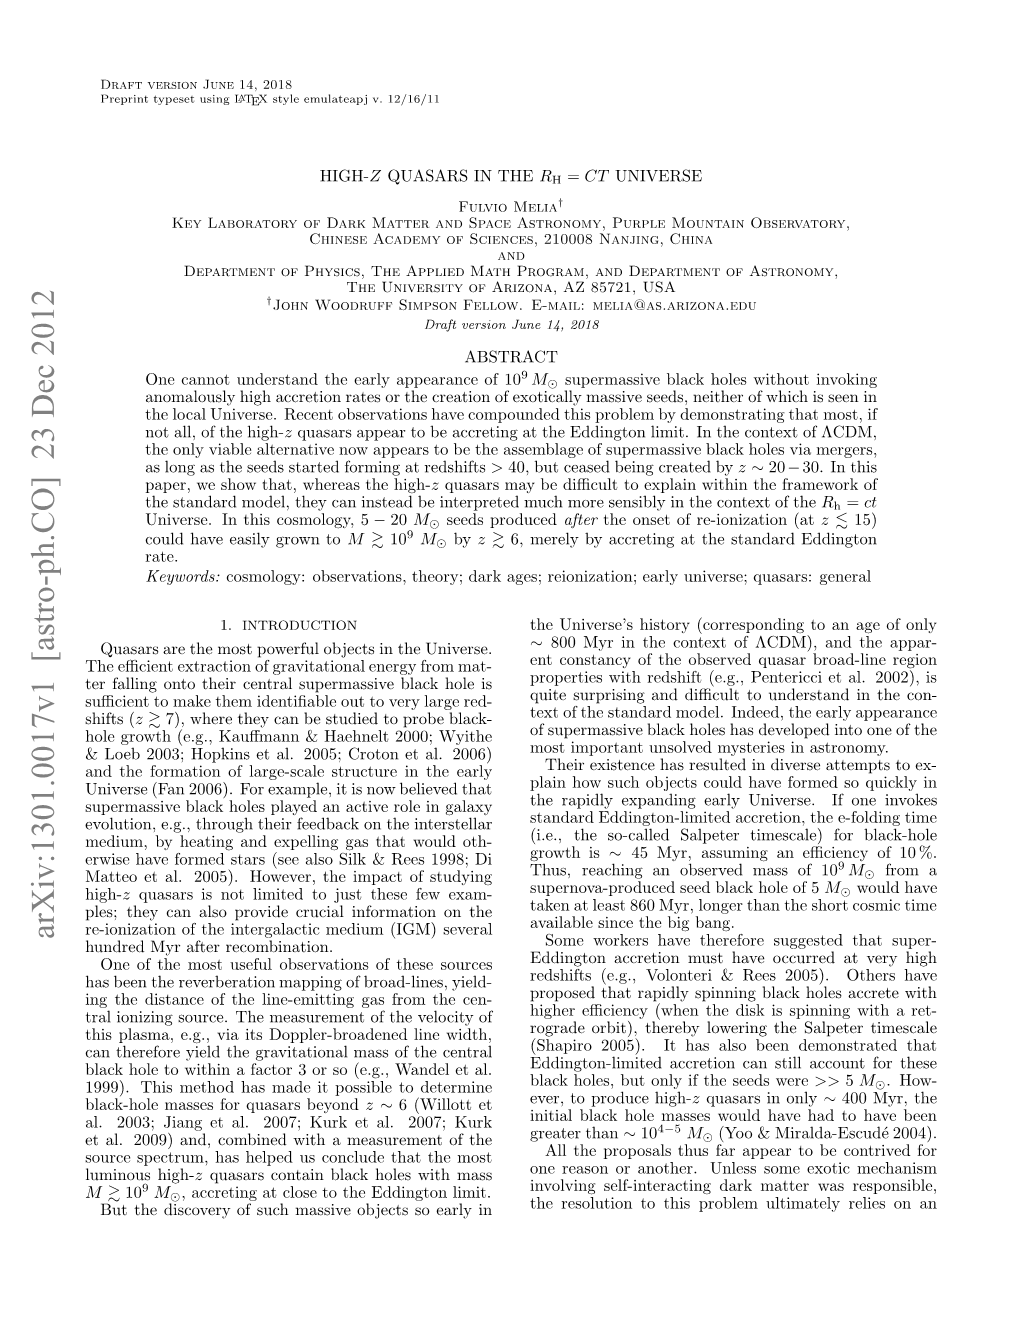 Arxiv:1301.0017V1 [Astro-Ph.CO] 23 Dec 2012 M L 03 in Ta.20;Kr Ta.20;Kurk 2007; Most the the Al